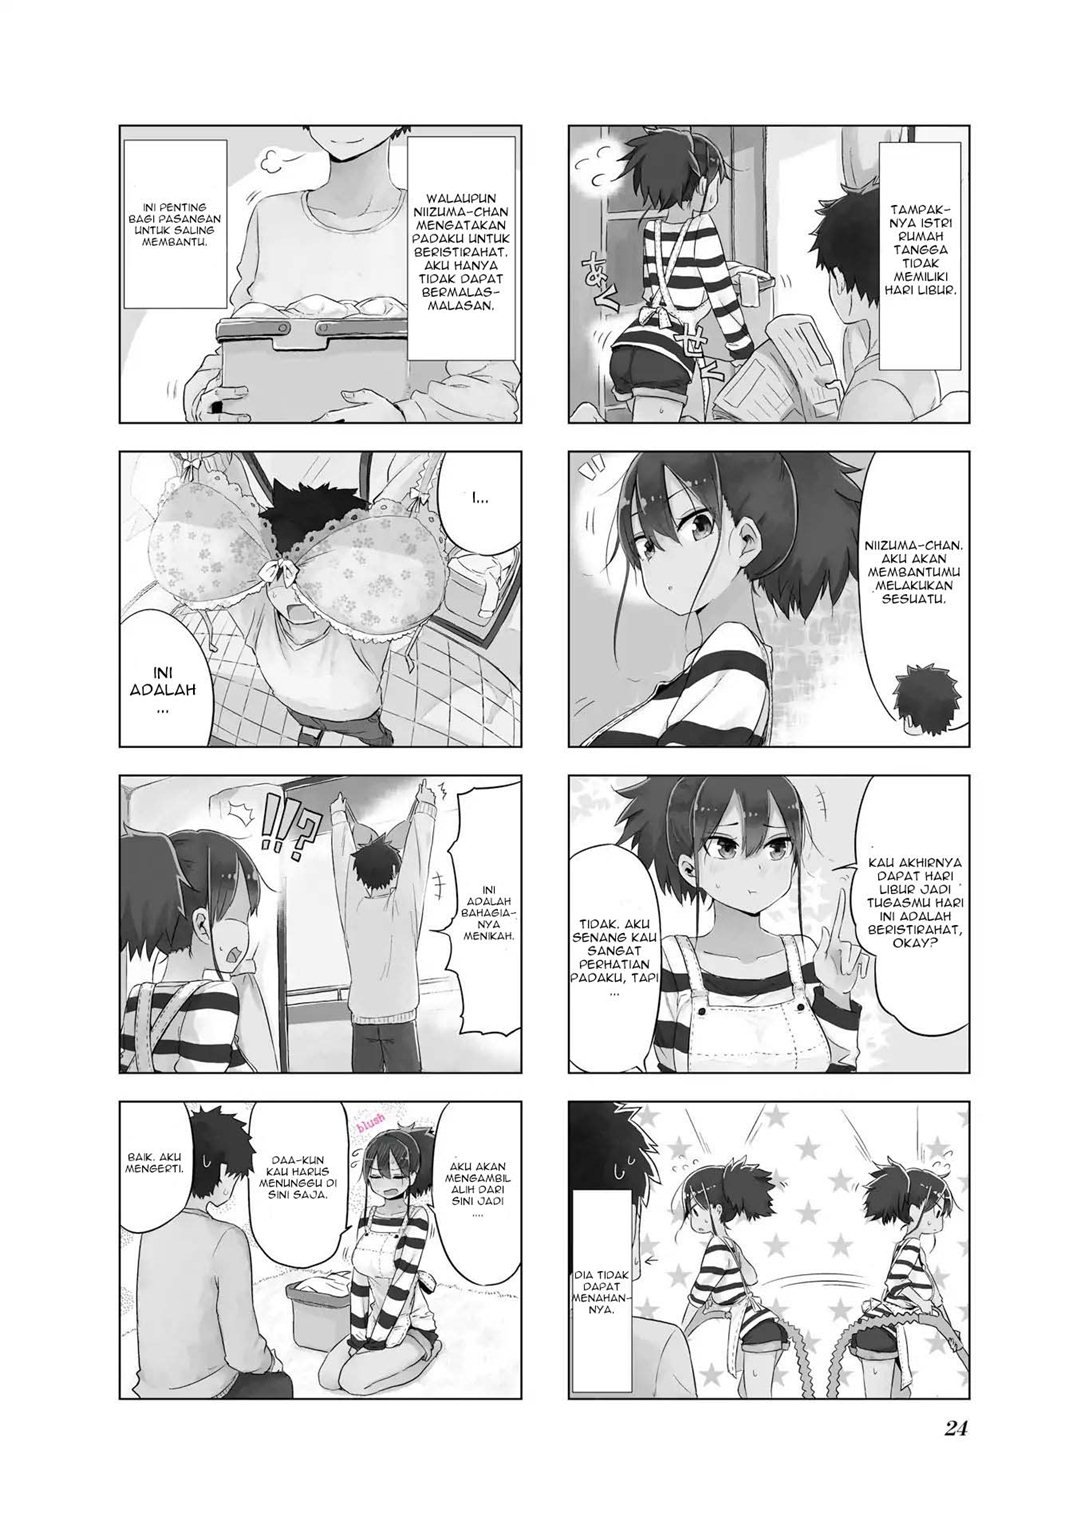 Baca Oku-sama wa Niizuma-chan Chapter 3  - GudangKomik